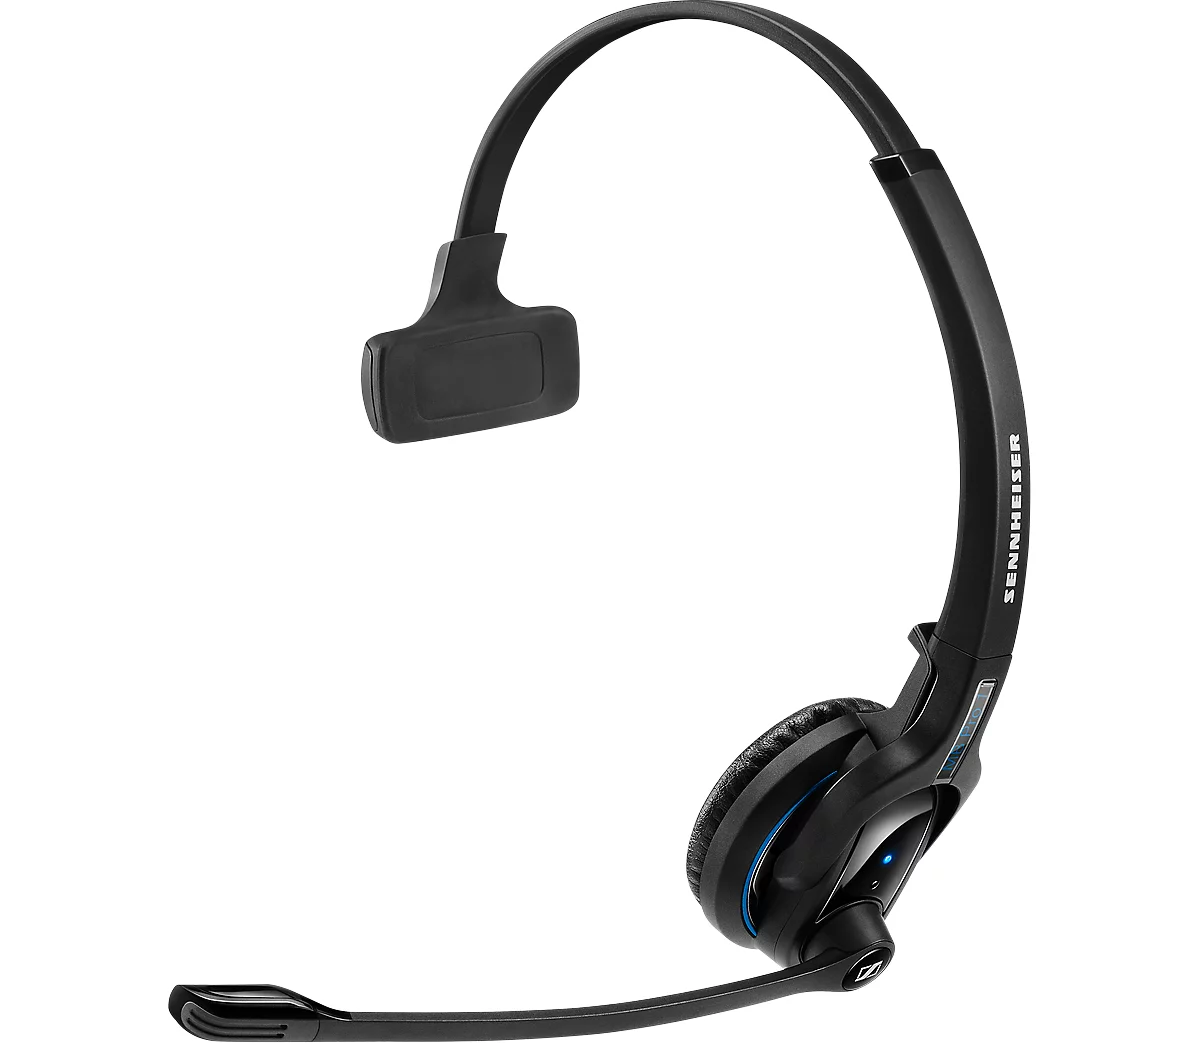 Auriculares Bluetooth EPOS Sennheiser Bluetooth MB Pro1, monoaural, hasta 15 h de tiempo de conversación, alcance hasta 25 m, incluye cable de carga USB